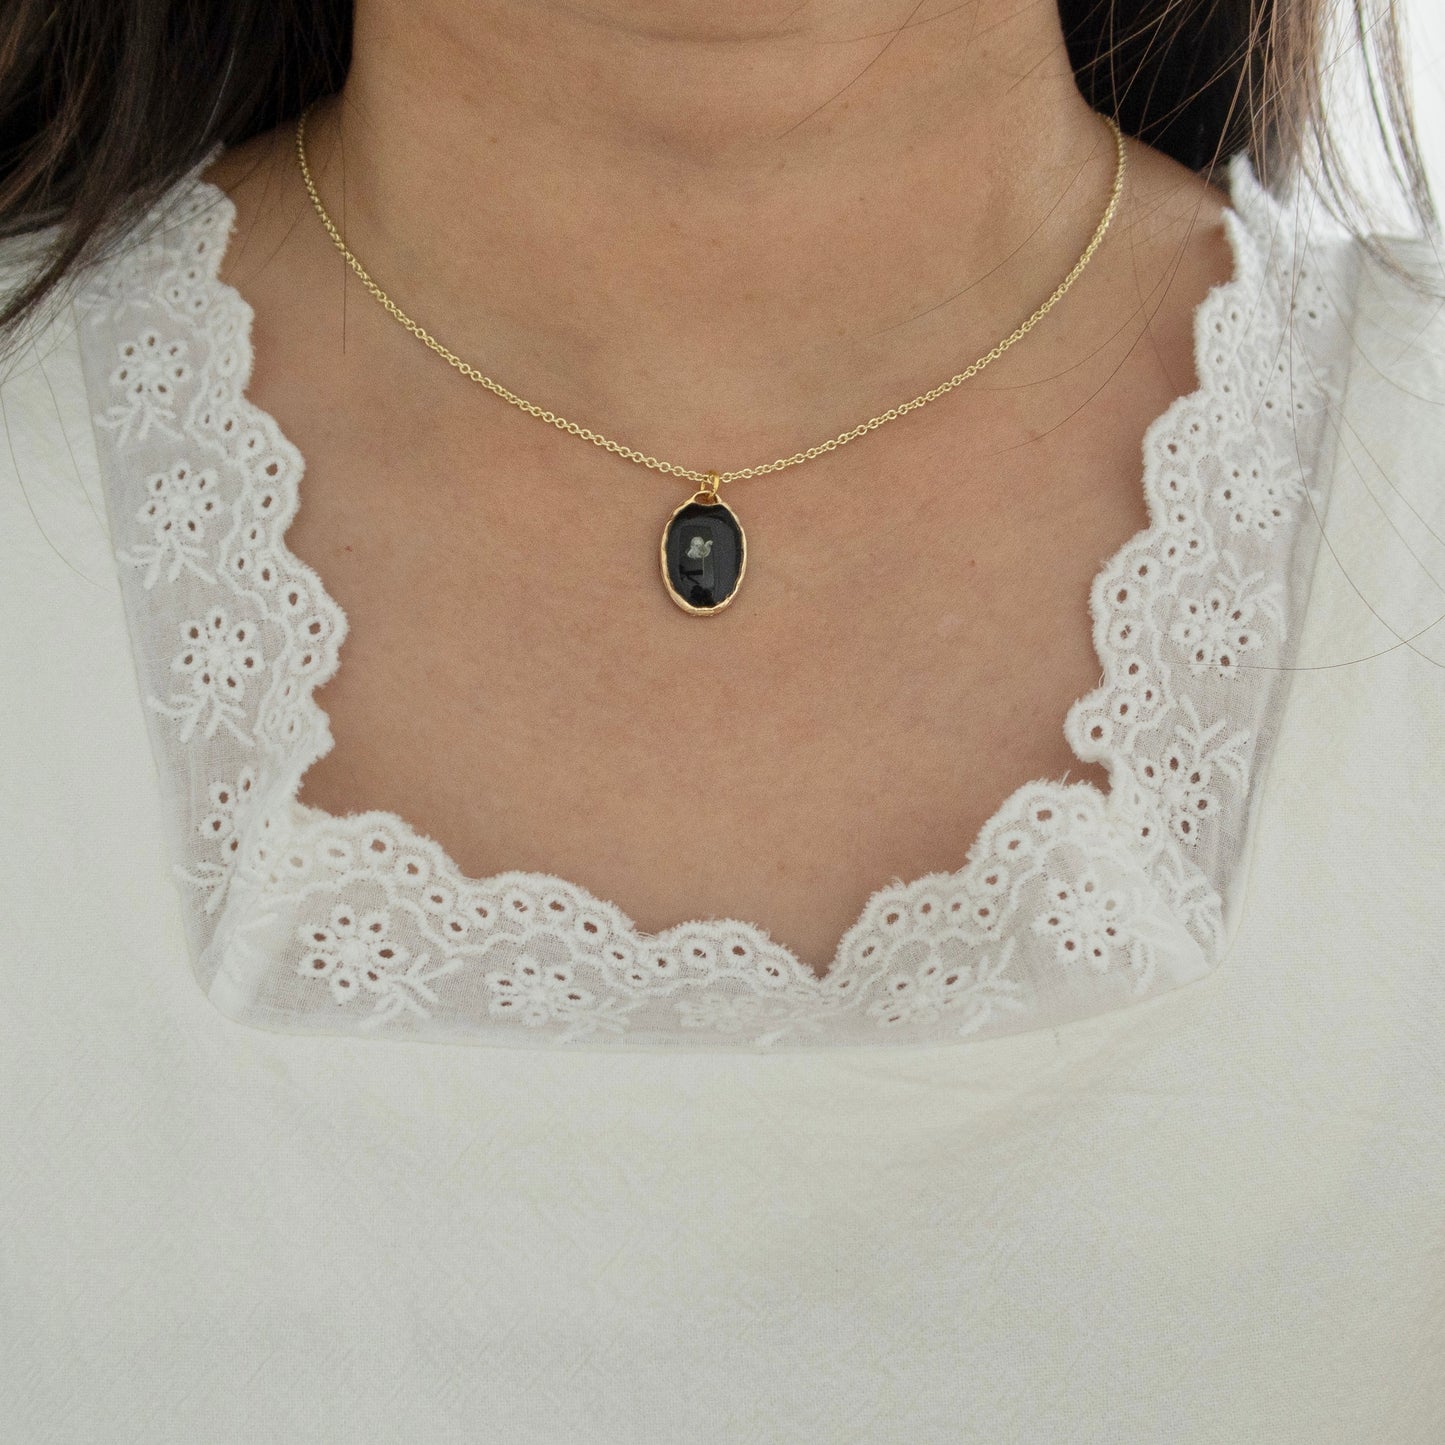 The Petit White Alyssum Necklace